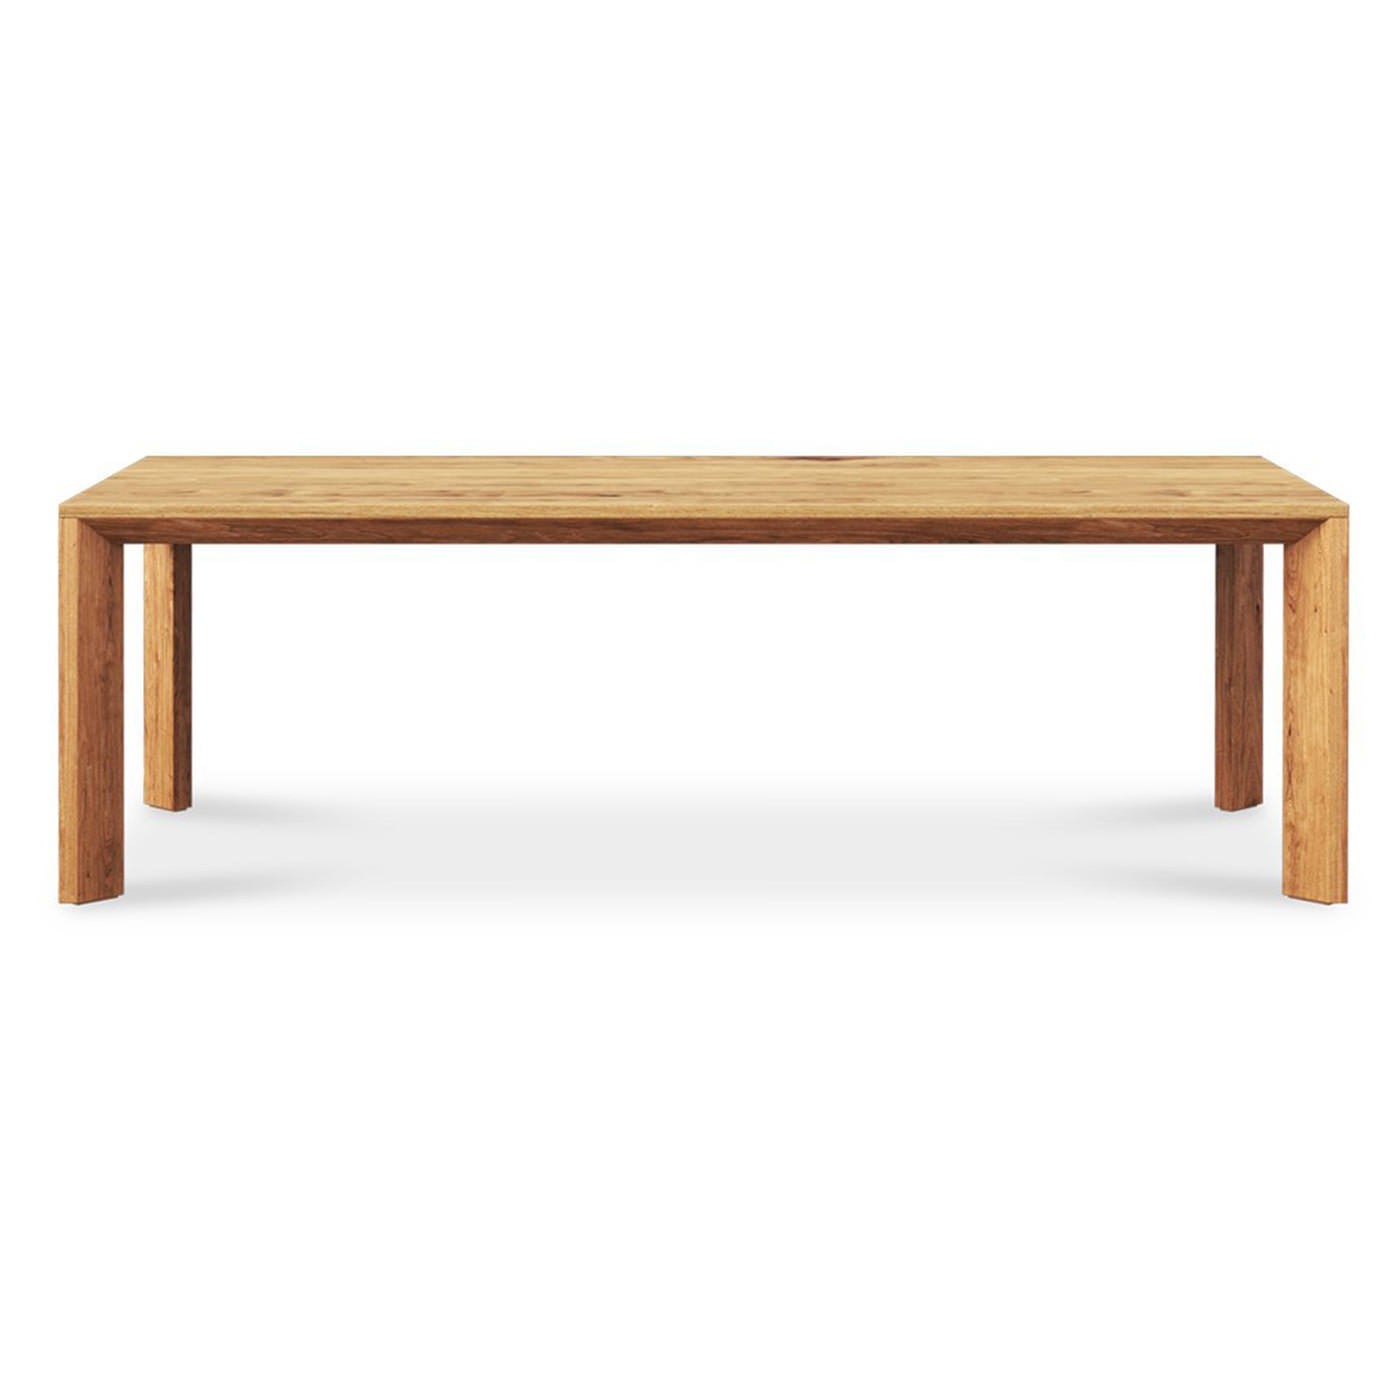 Parklea Teak Timber Dining Table, 280cm, Natural